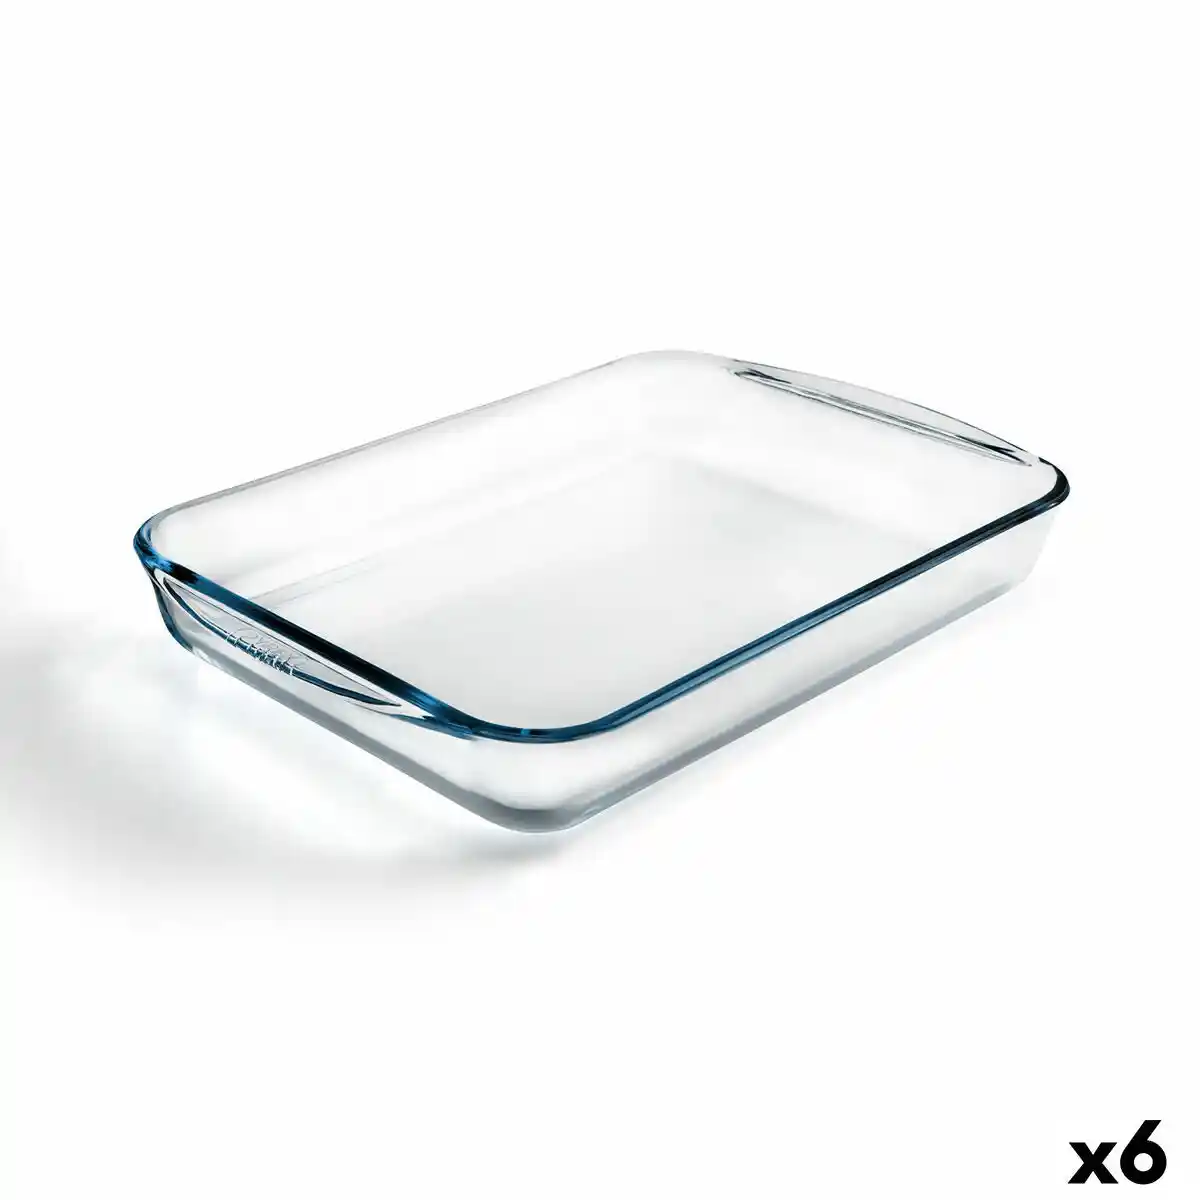 Plat de Four Pyrex Classic Ovale 30 x 21 x 7 cm Transparent verre (4 Unités)